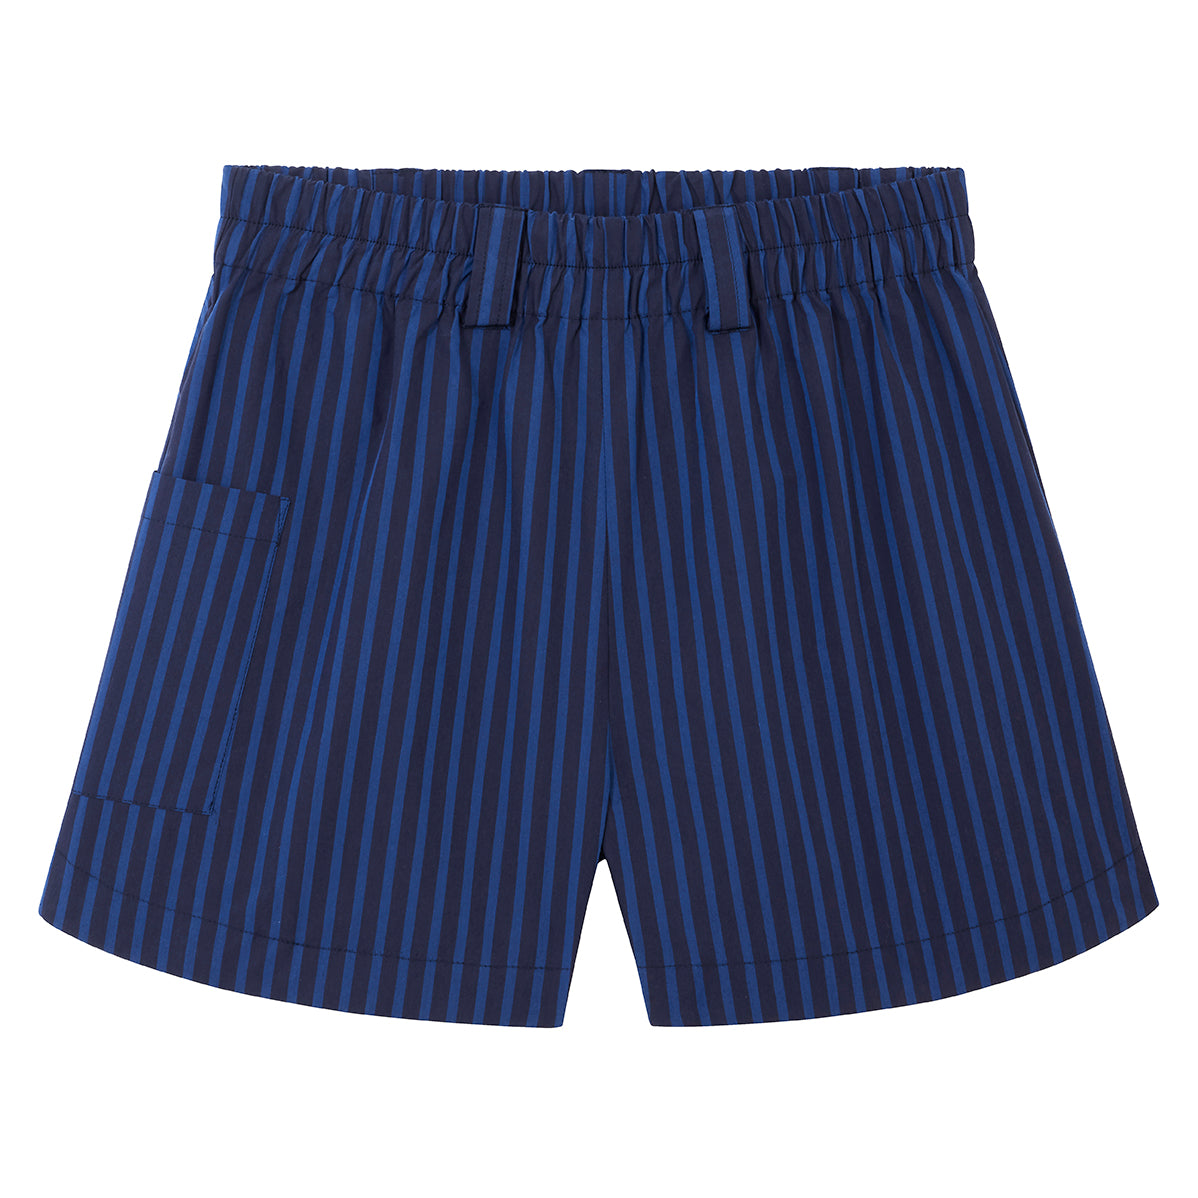 Stripe Freddie shorts - Navy/Blue